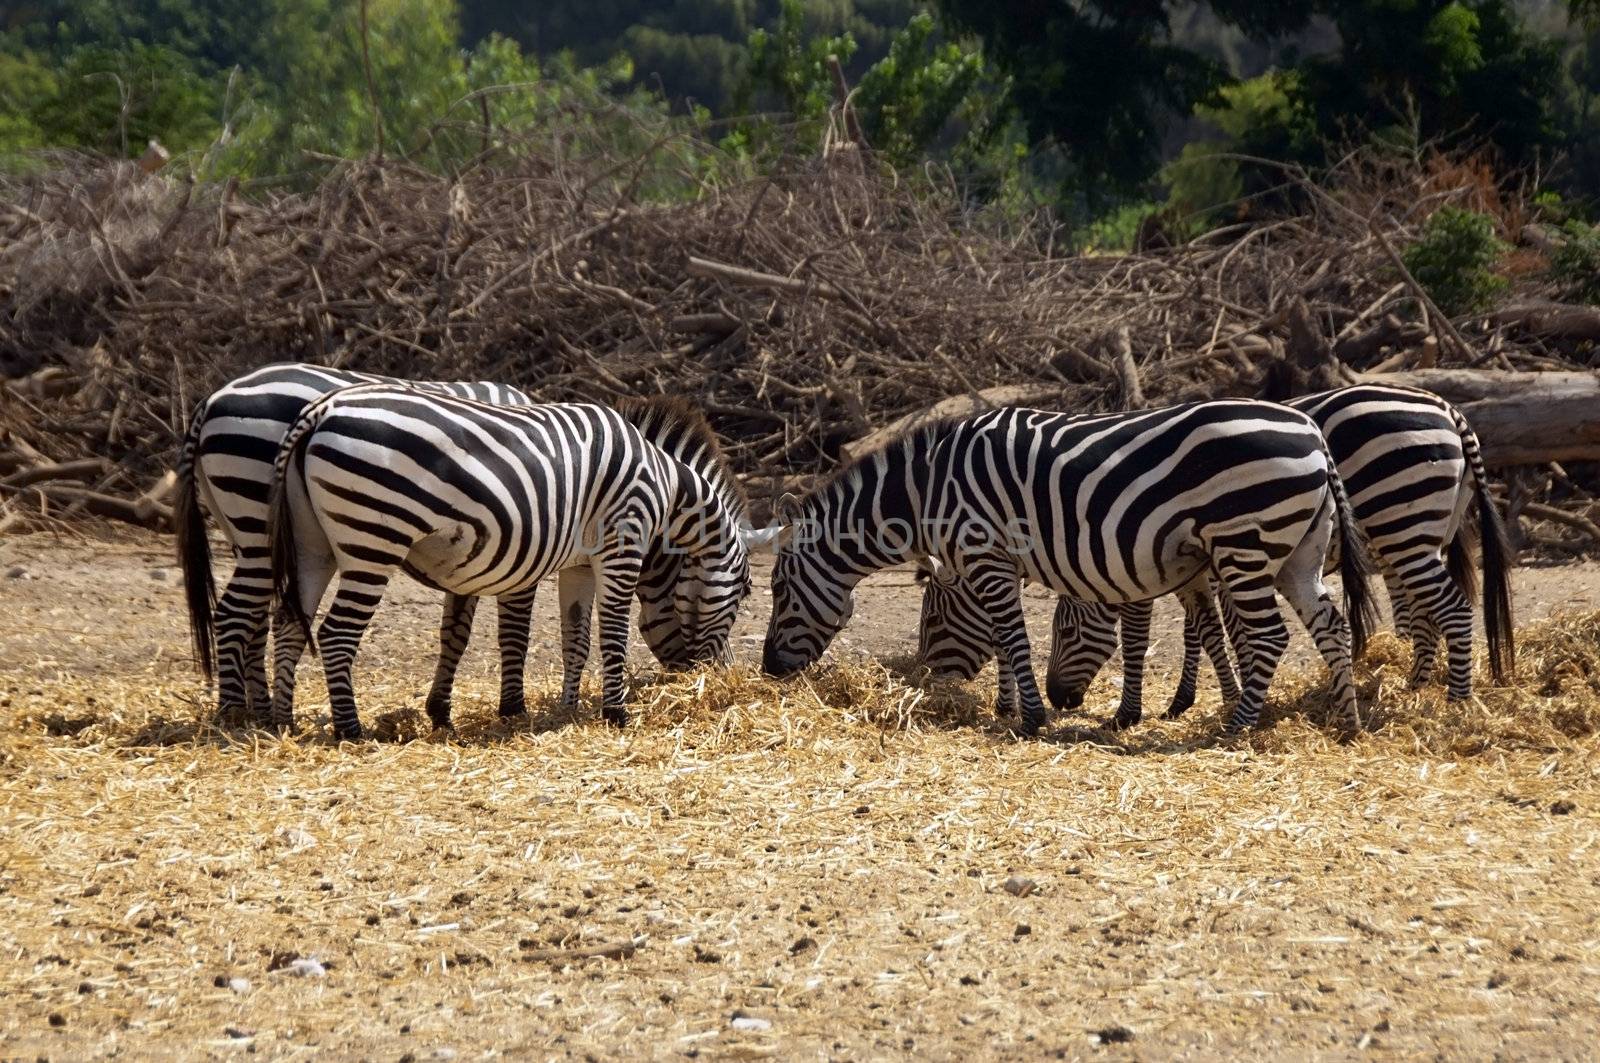 grazing zebras by irisphoto4